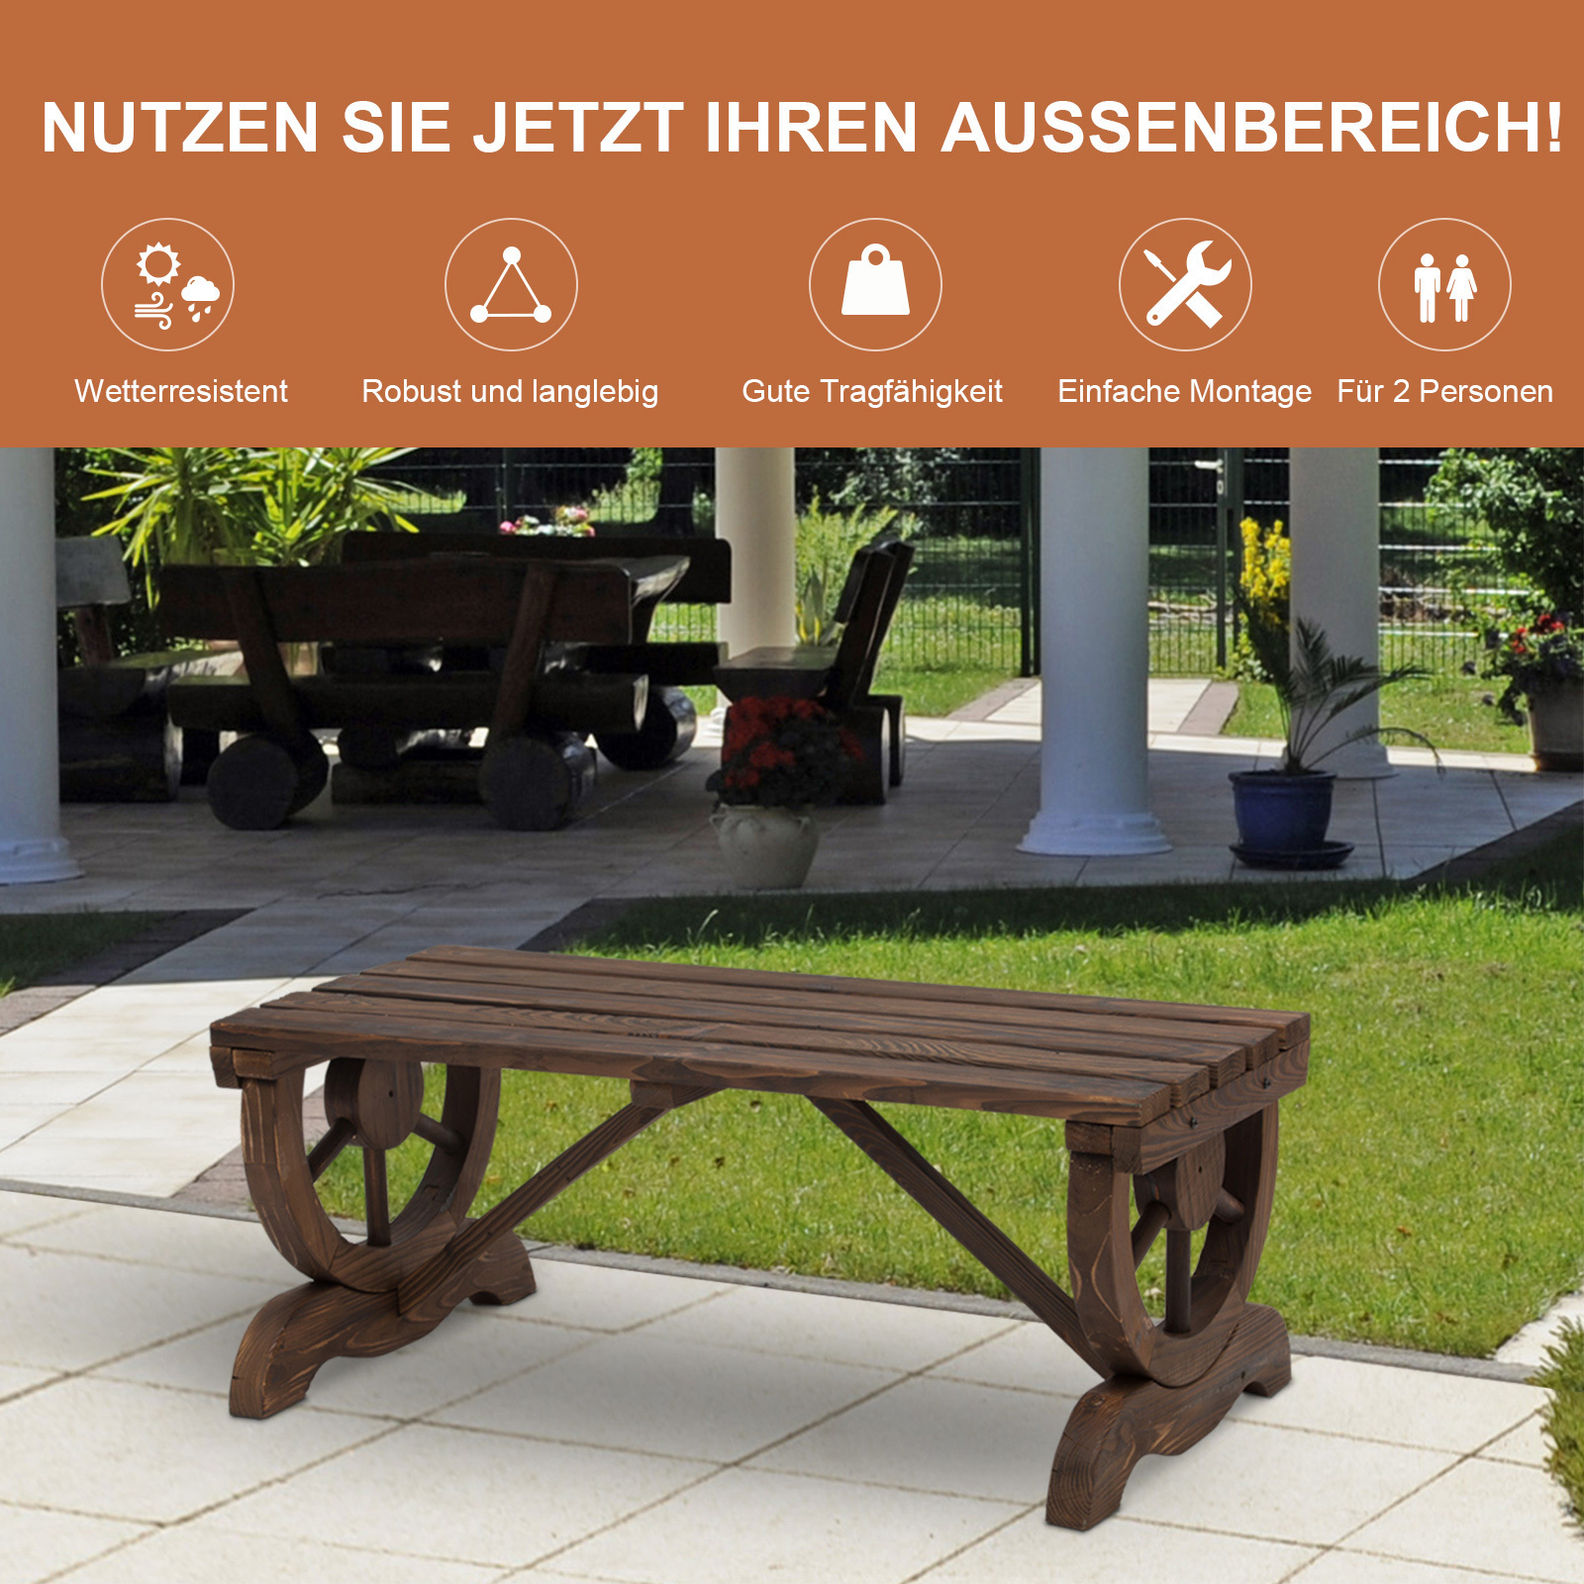 Sitzbank im Wagenrad-Design Farbe: dunkelbraun | Weltbild.de